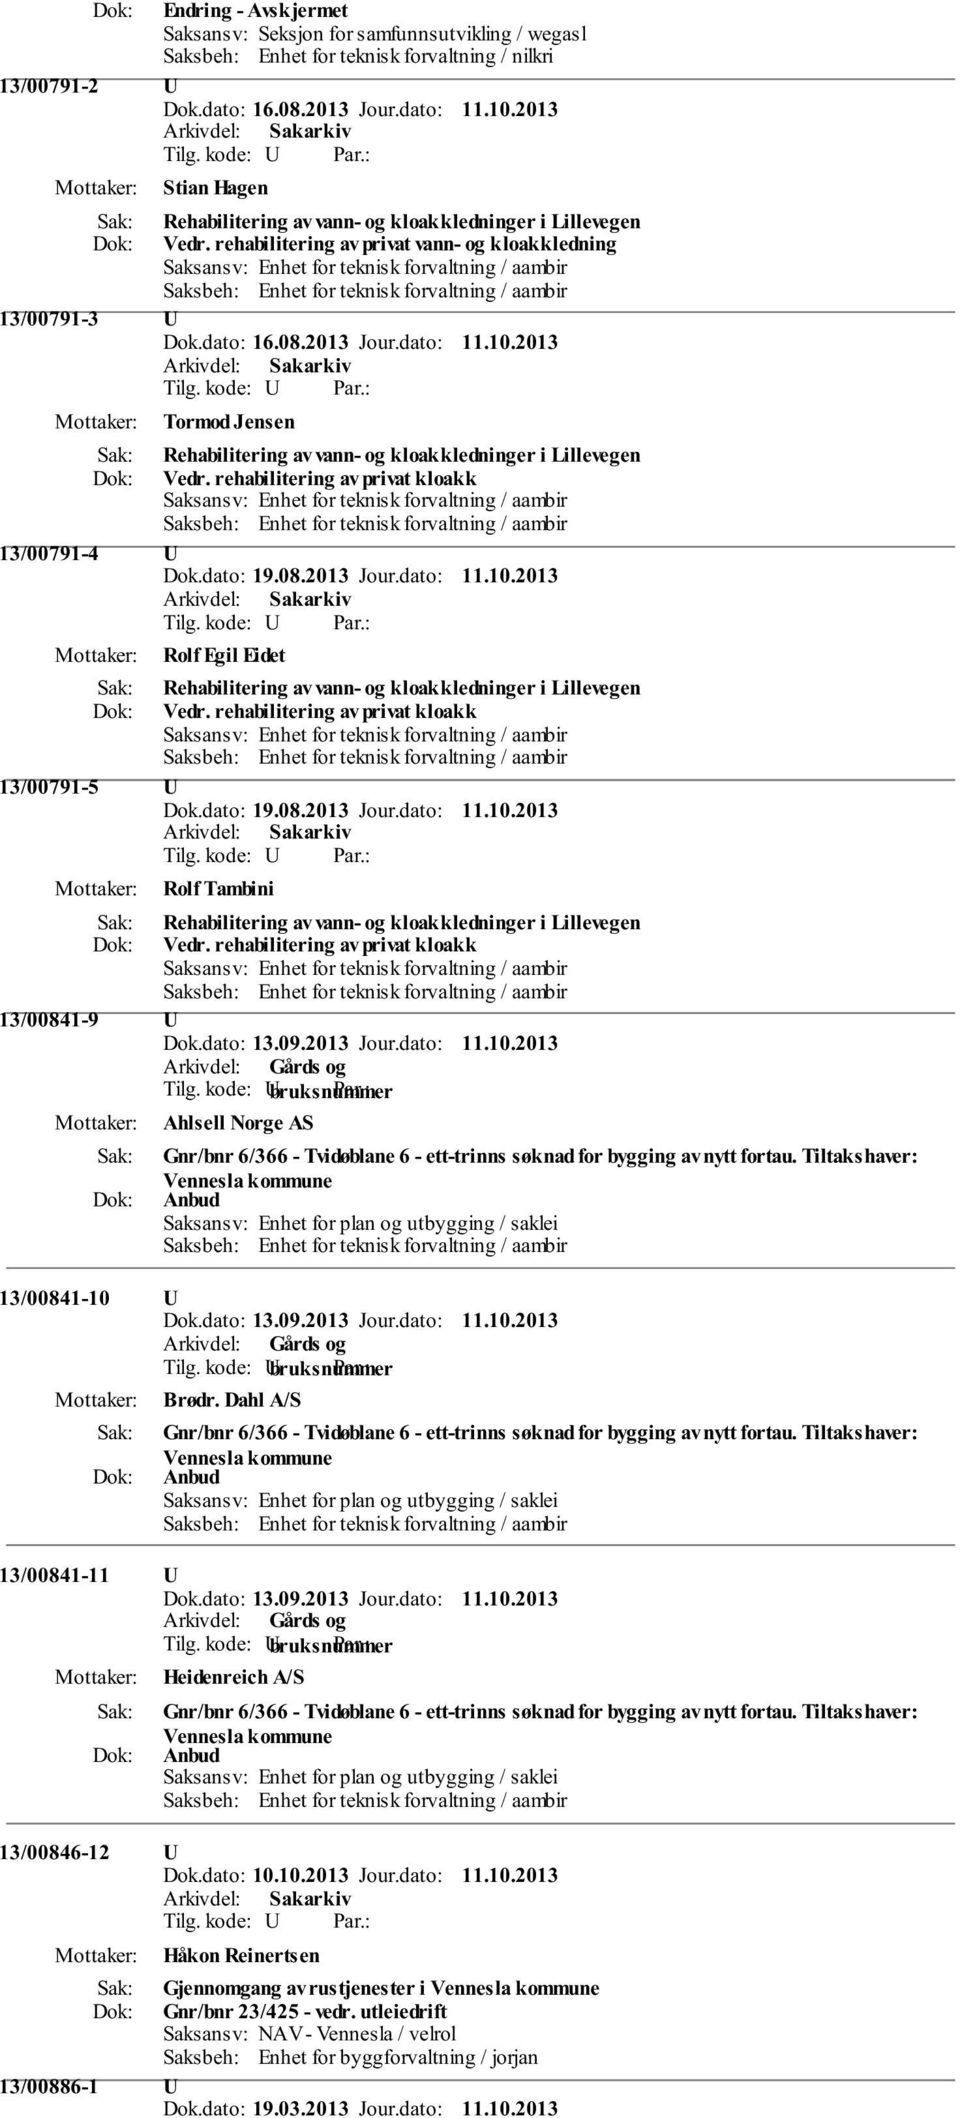 2013 Tormod Jensen Rehabilitering av vann- og kloakkledninger i Lillevegen Vedr. rehabilitering av privat kloakk 13/00791-4 U Dok.dato: 19.08.2013 Jour.dato: 11.10.